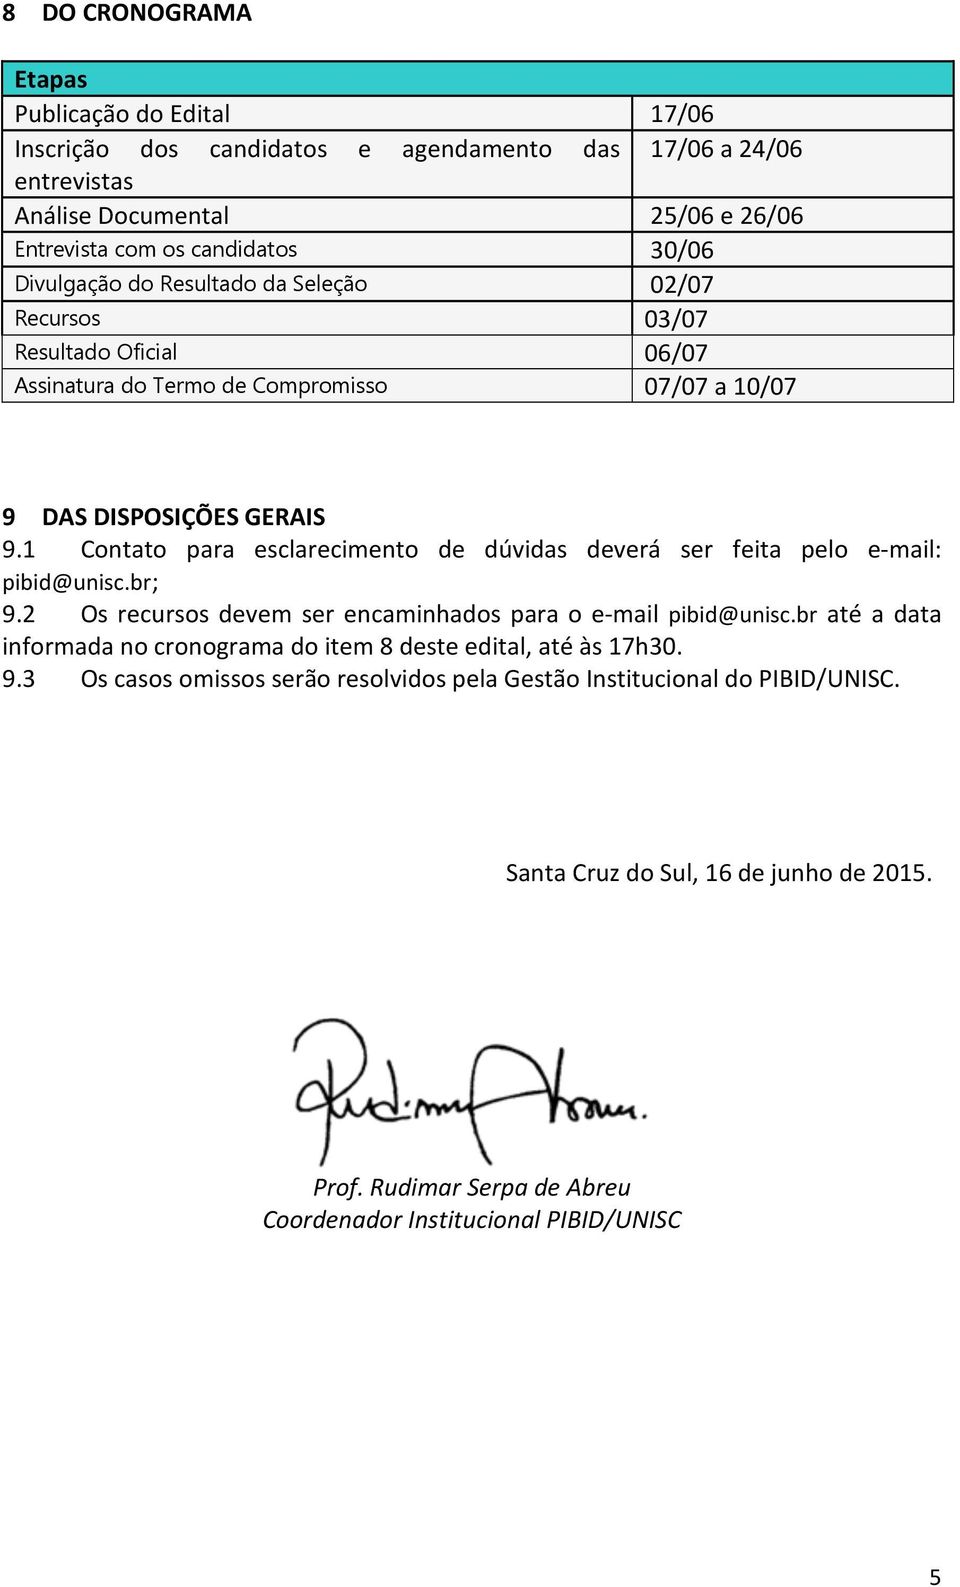 1 Contato para esclarecimento de dúvidas deverá ser feita pelo e-mail: pibid@unisc.br; 9.2 Os recursos devem ser encaminhados para o e-mail pibid@unisc.